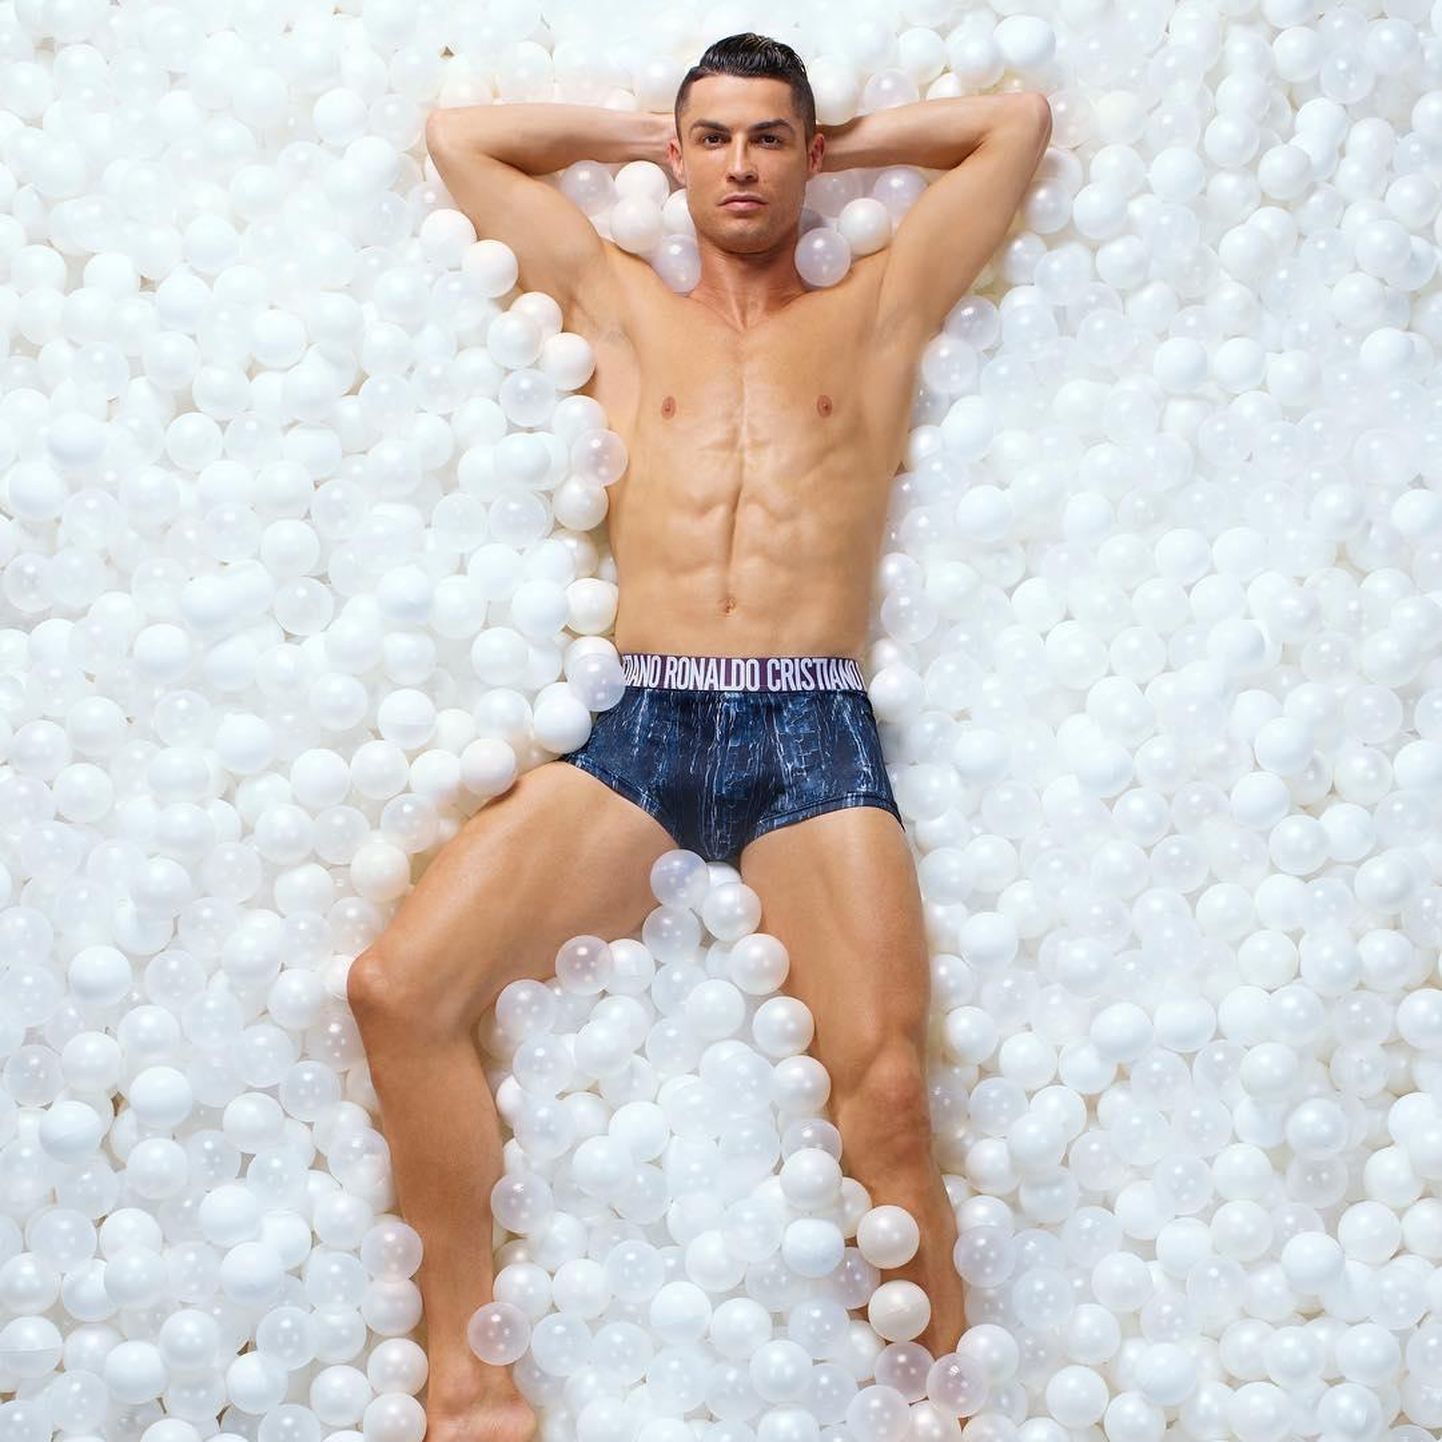 Cristiano Ronaldo pole ammu enam kõigest jalgpallur, vaid ta on ka menukas bränd, edukas ärimees ja jumaldatud seksisümbol.
FOTOD: Instagram/Scanpix